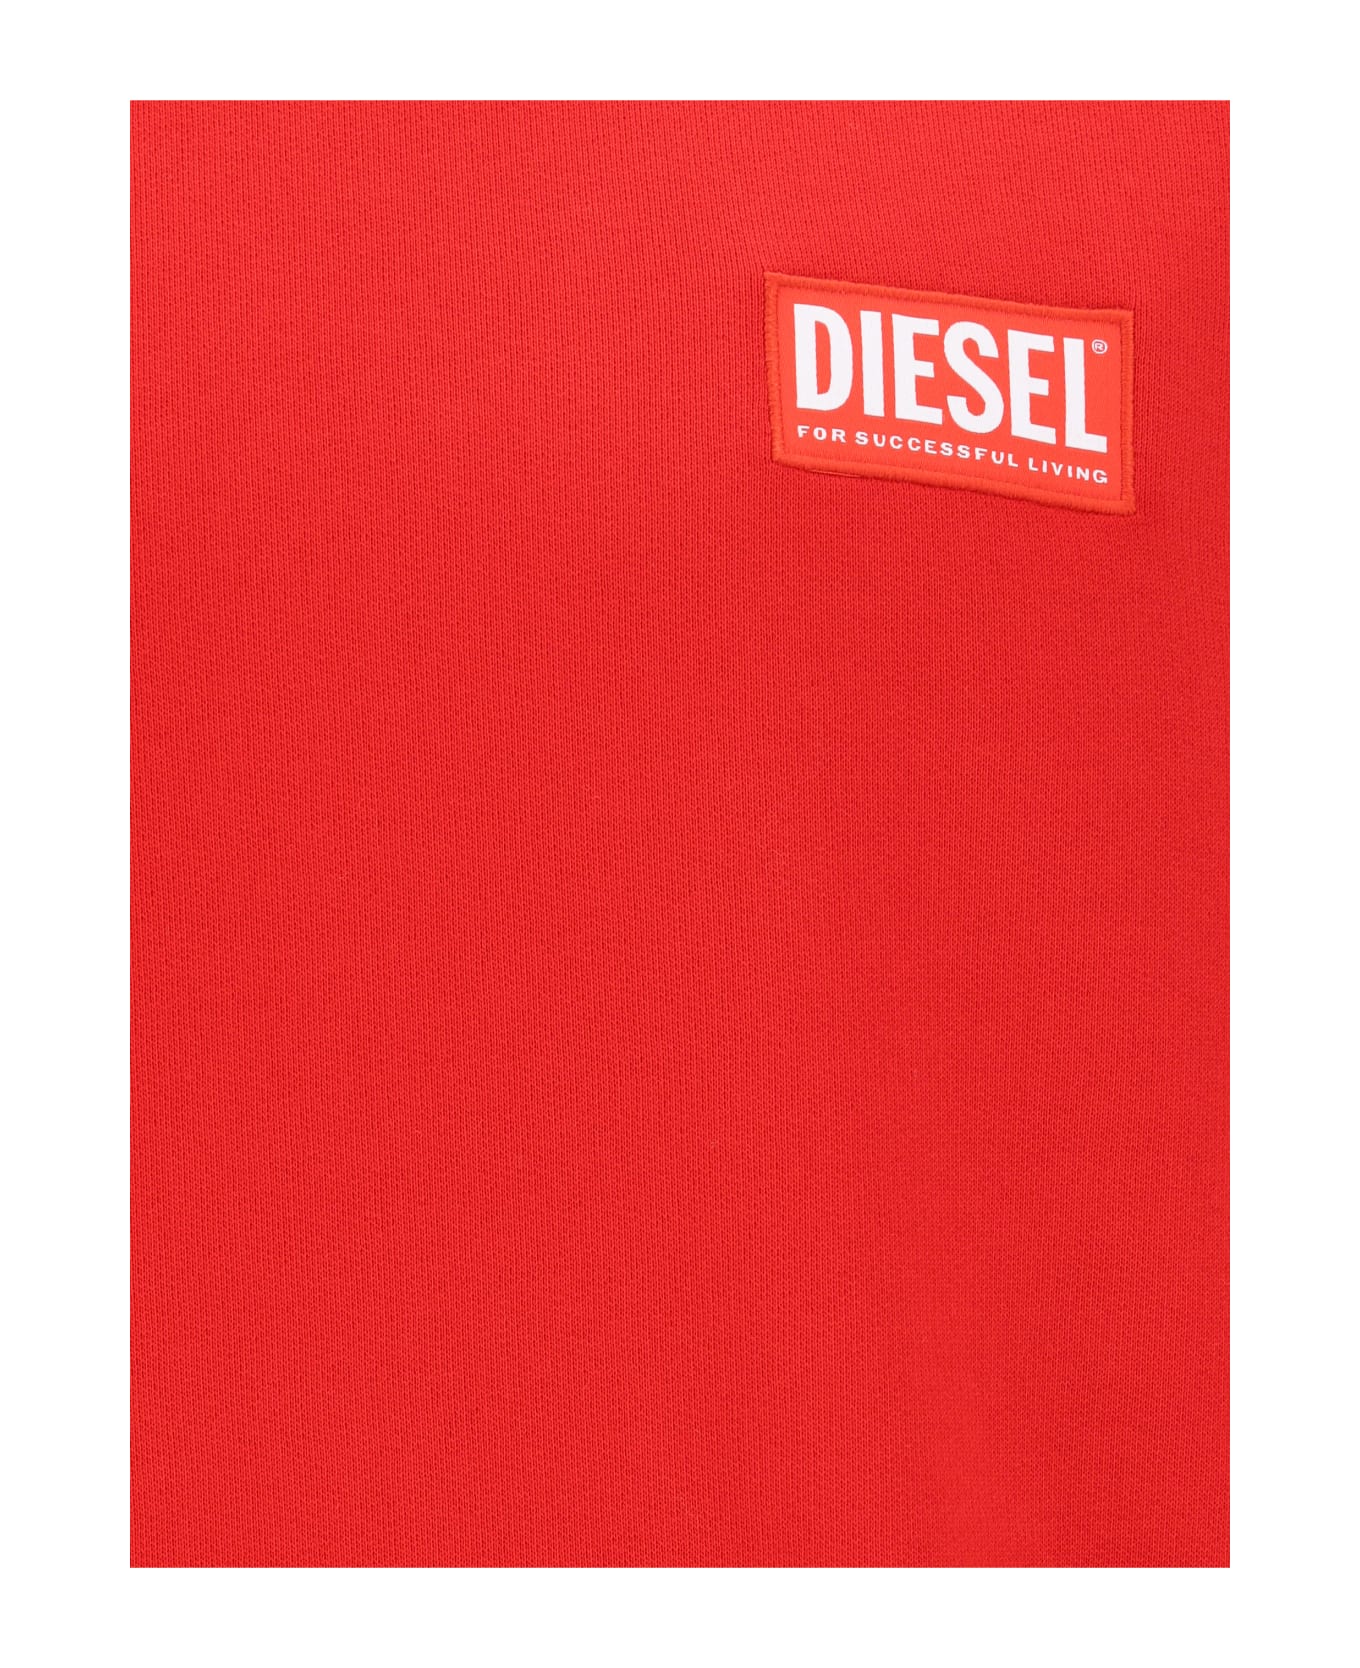 Diesel Sweatshirt - Formula Red